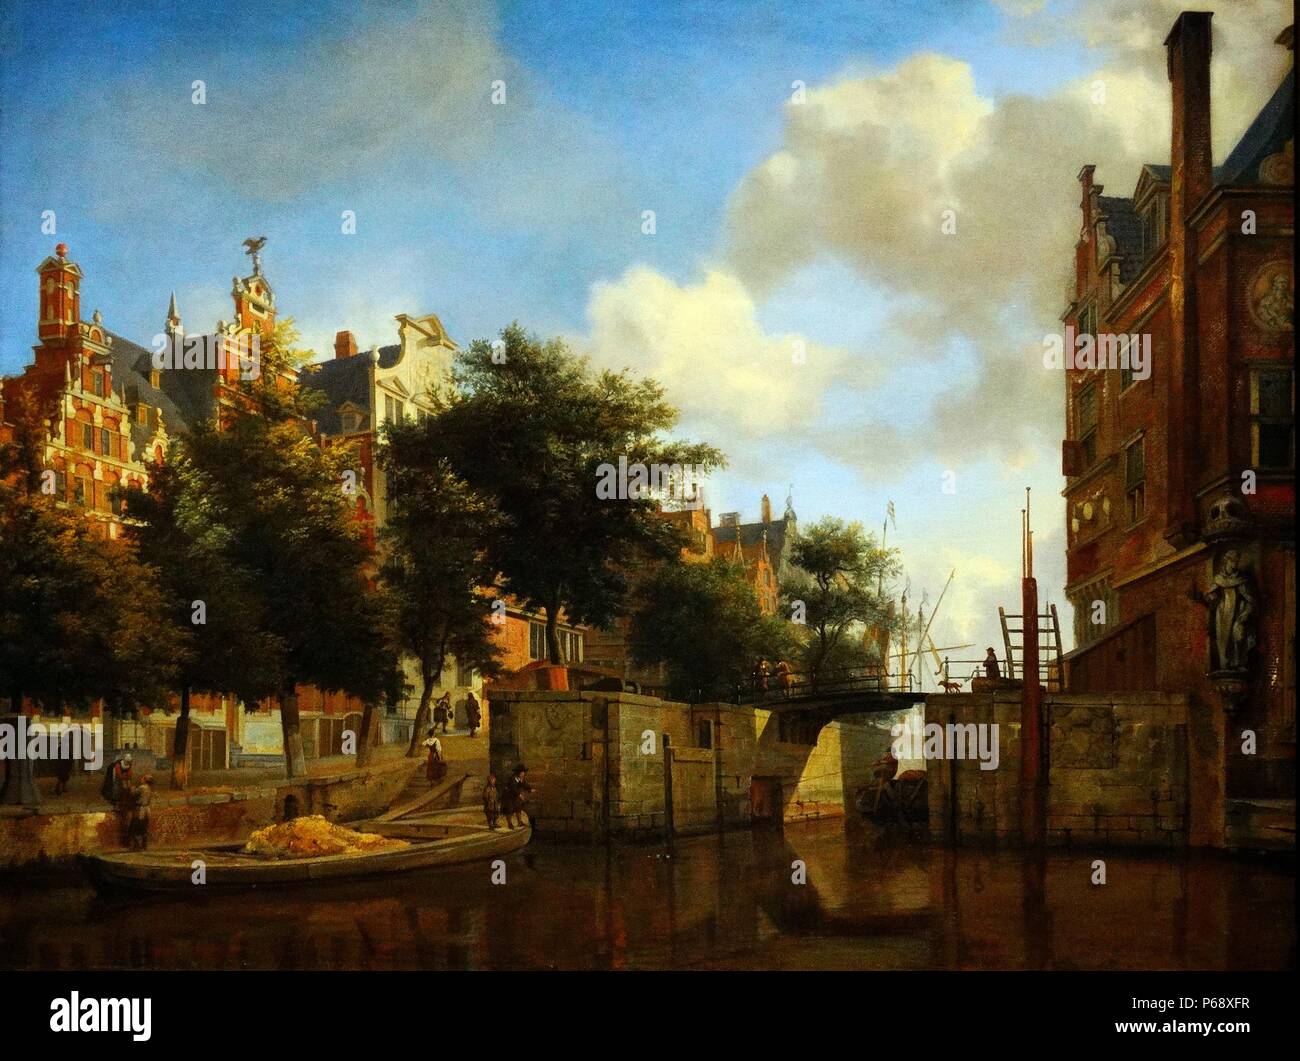 Gemälde von Amsterdam City View mit Häusern auf der Herengracht und der alten Haarlemmersluis. Gemalt von Jan van der Heyden (1637-1712). Vom 17. Jahrhundert Stockfoto